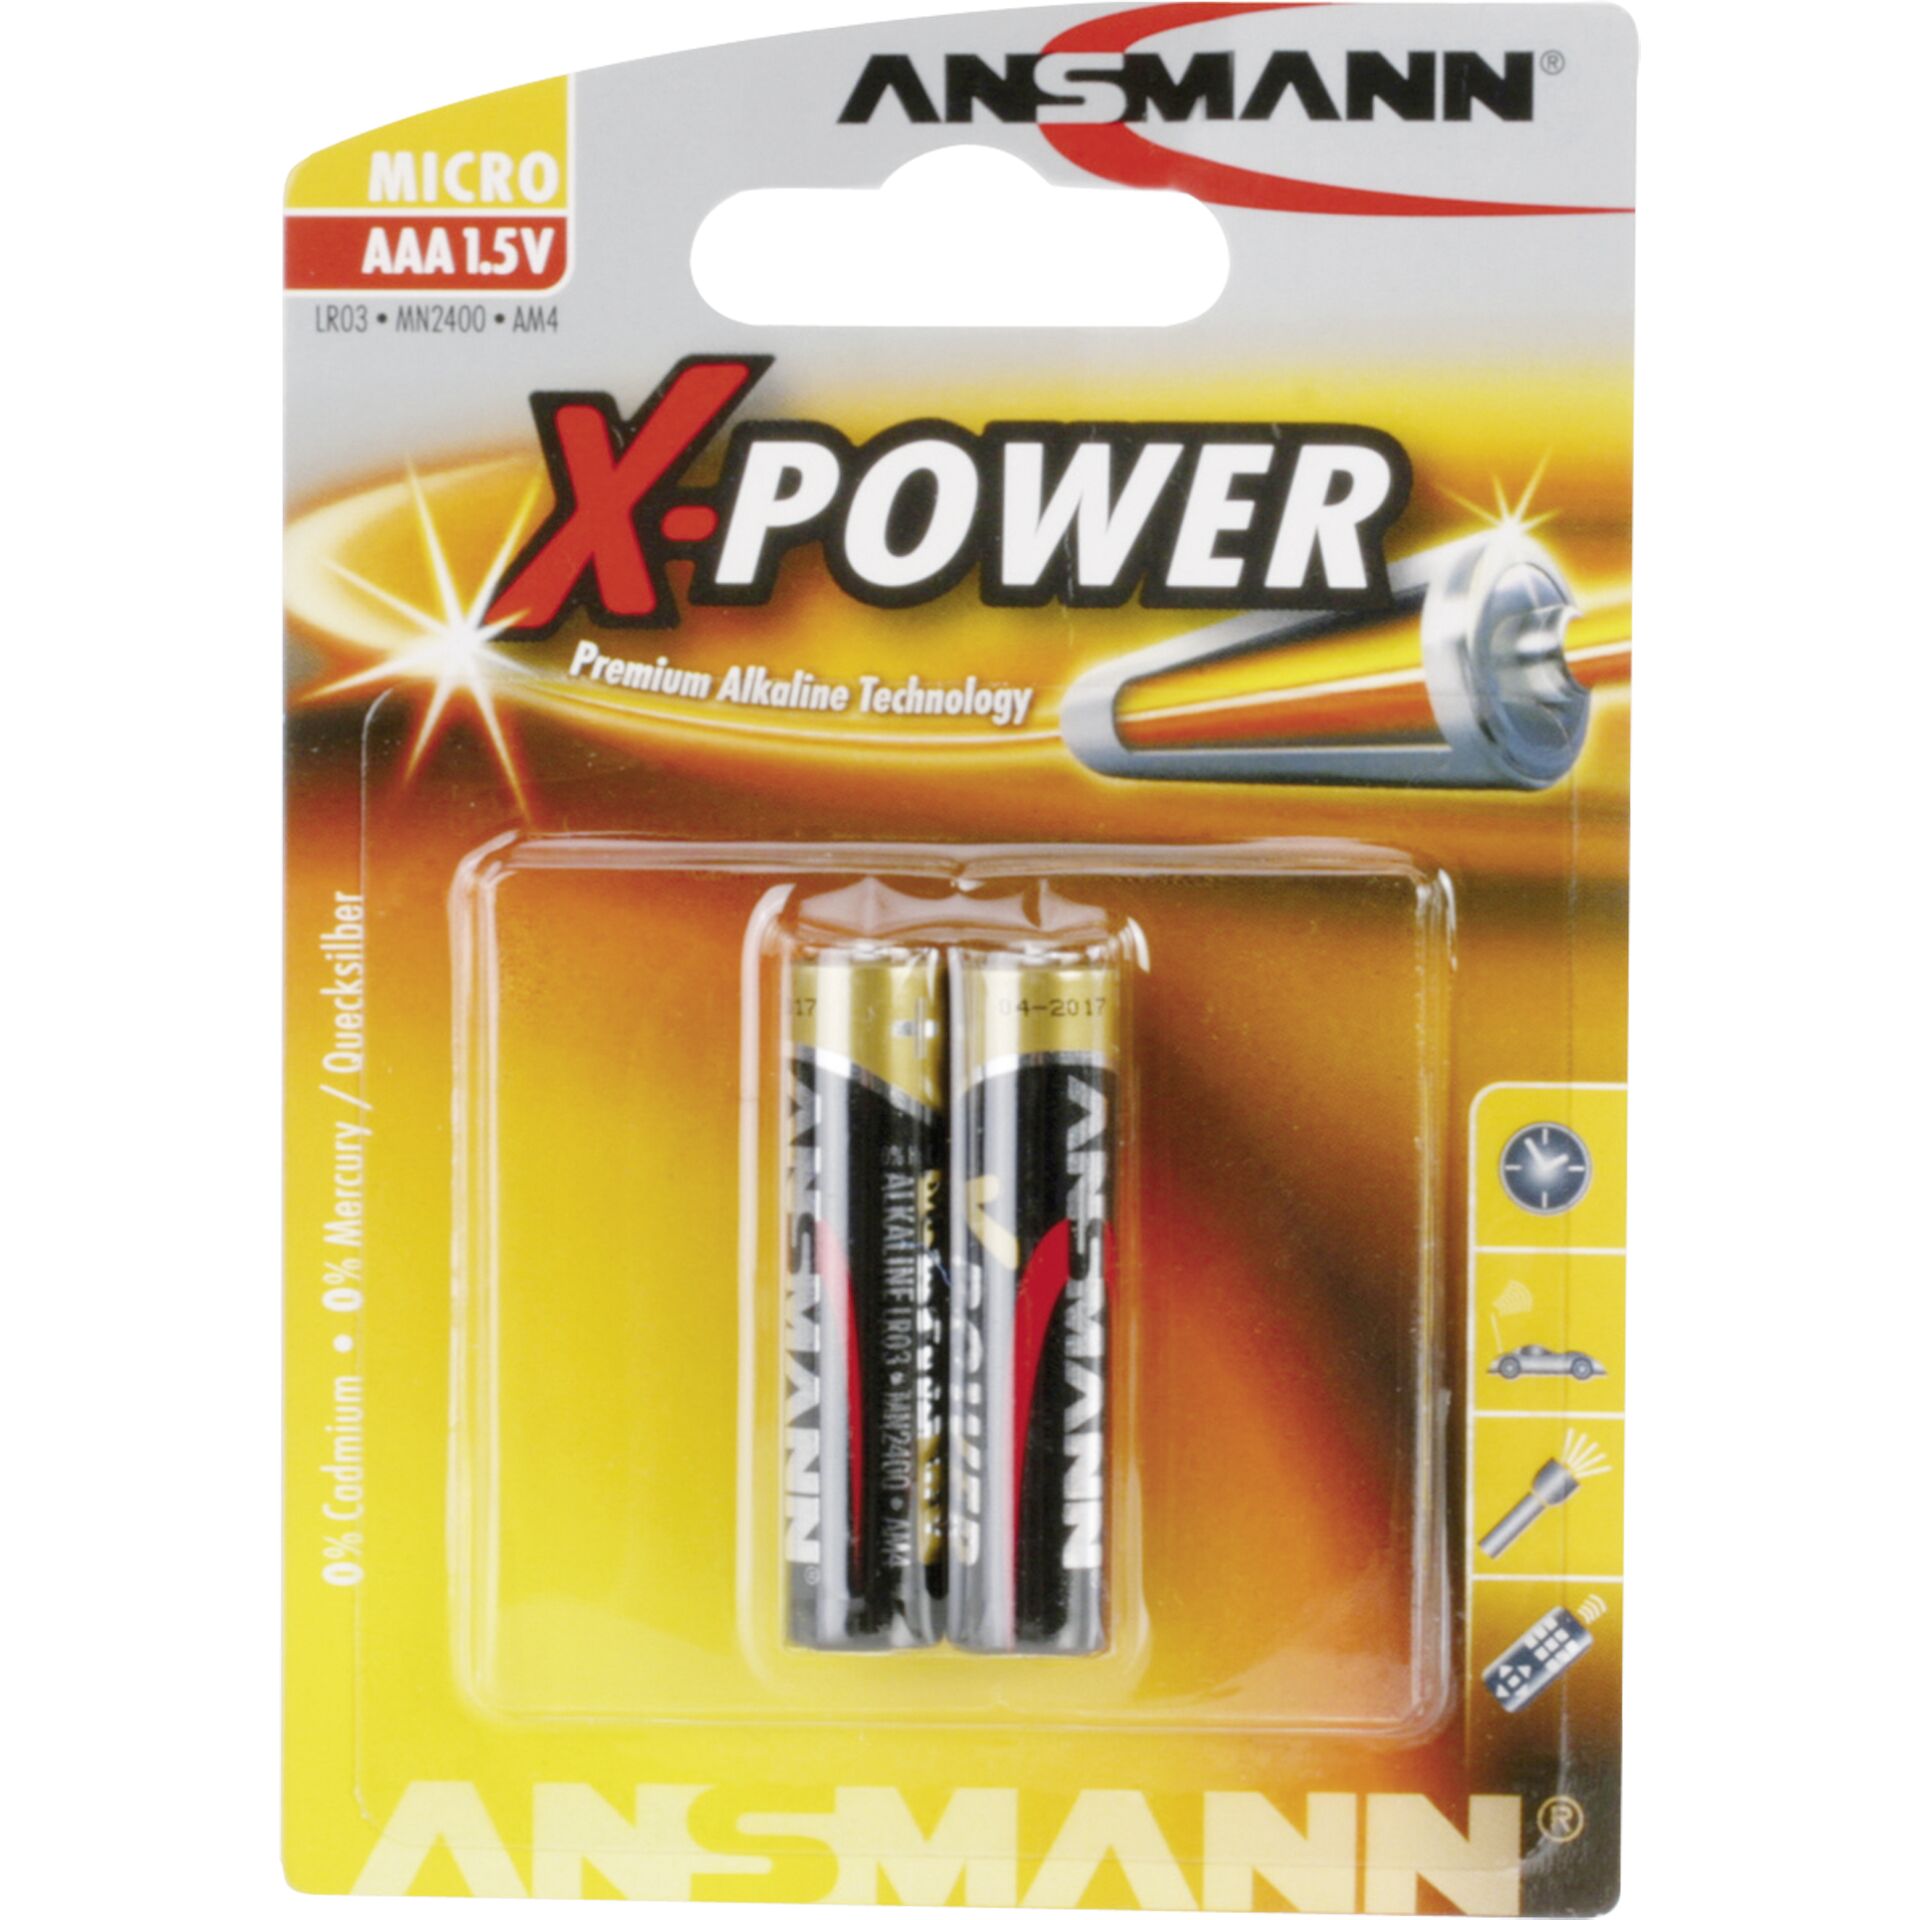 Ansmann Alkalinebatterie Micro AAA X-Power 2 Stück 